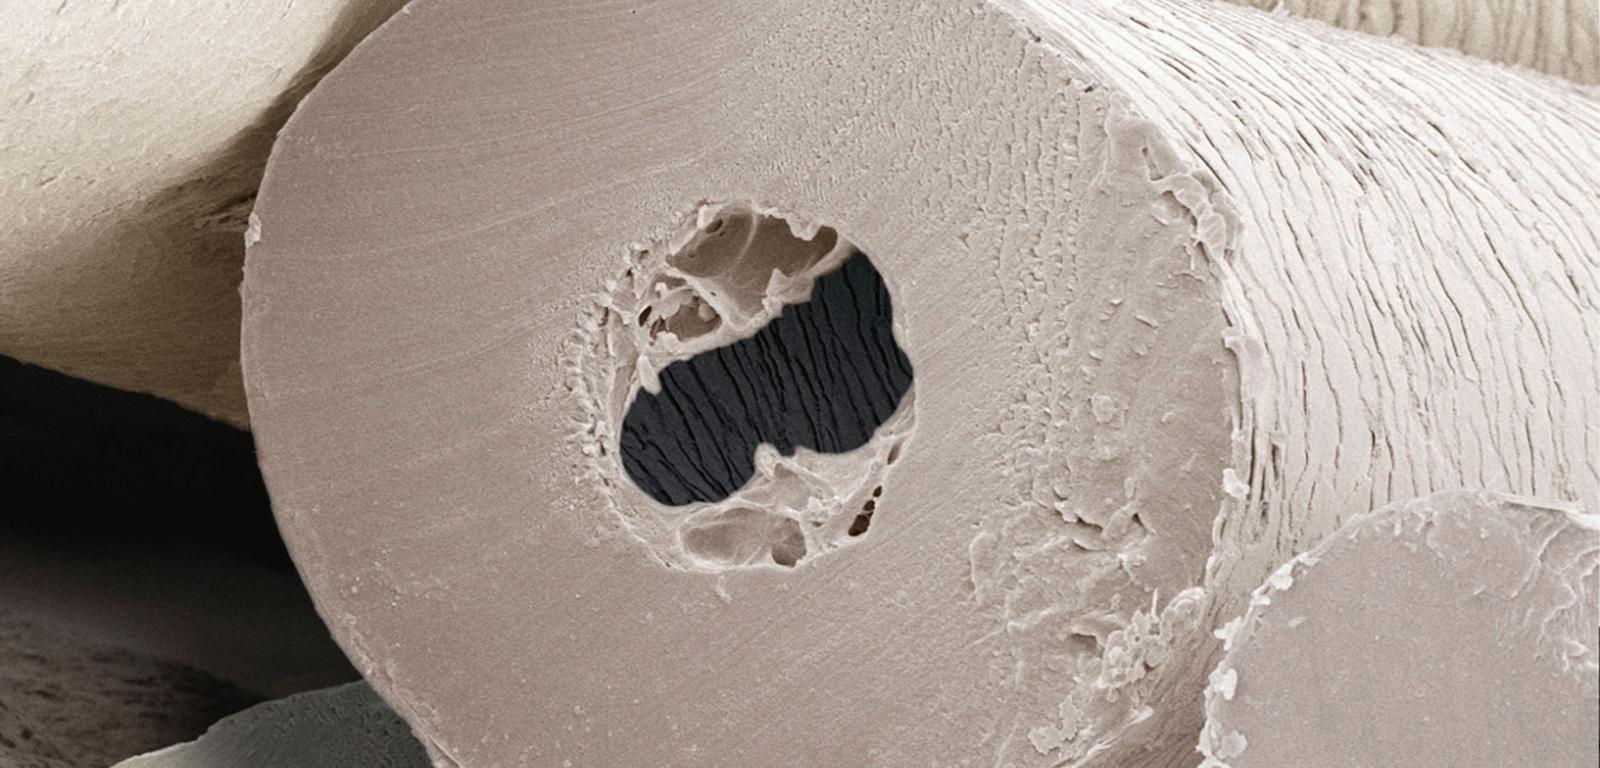 Włosy niedźwiedzia polarnego powiększone w skaningowym mikroskopie elektronowym.